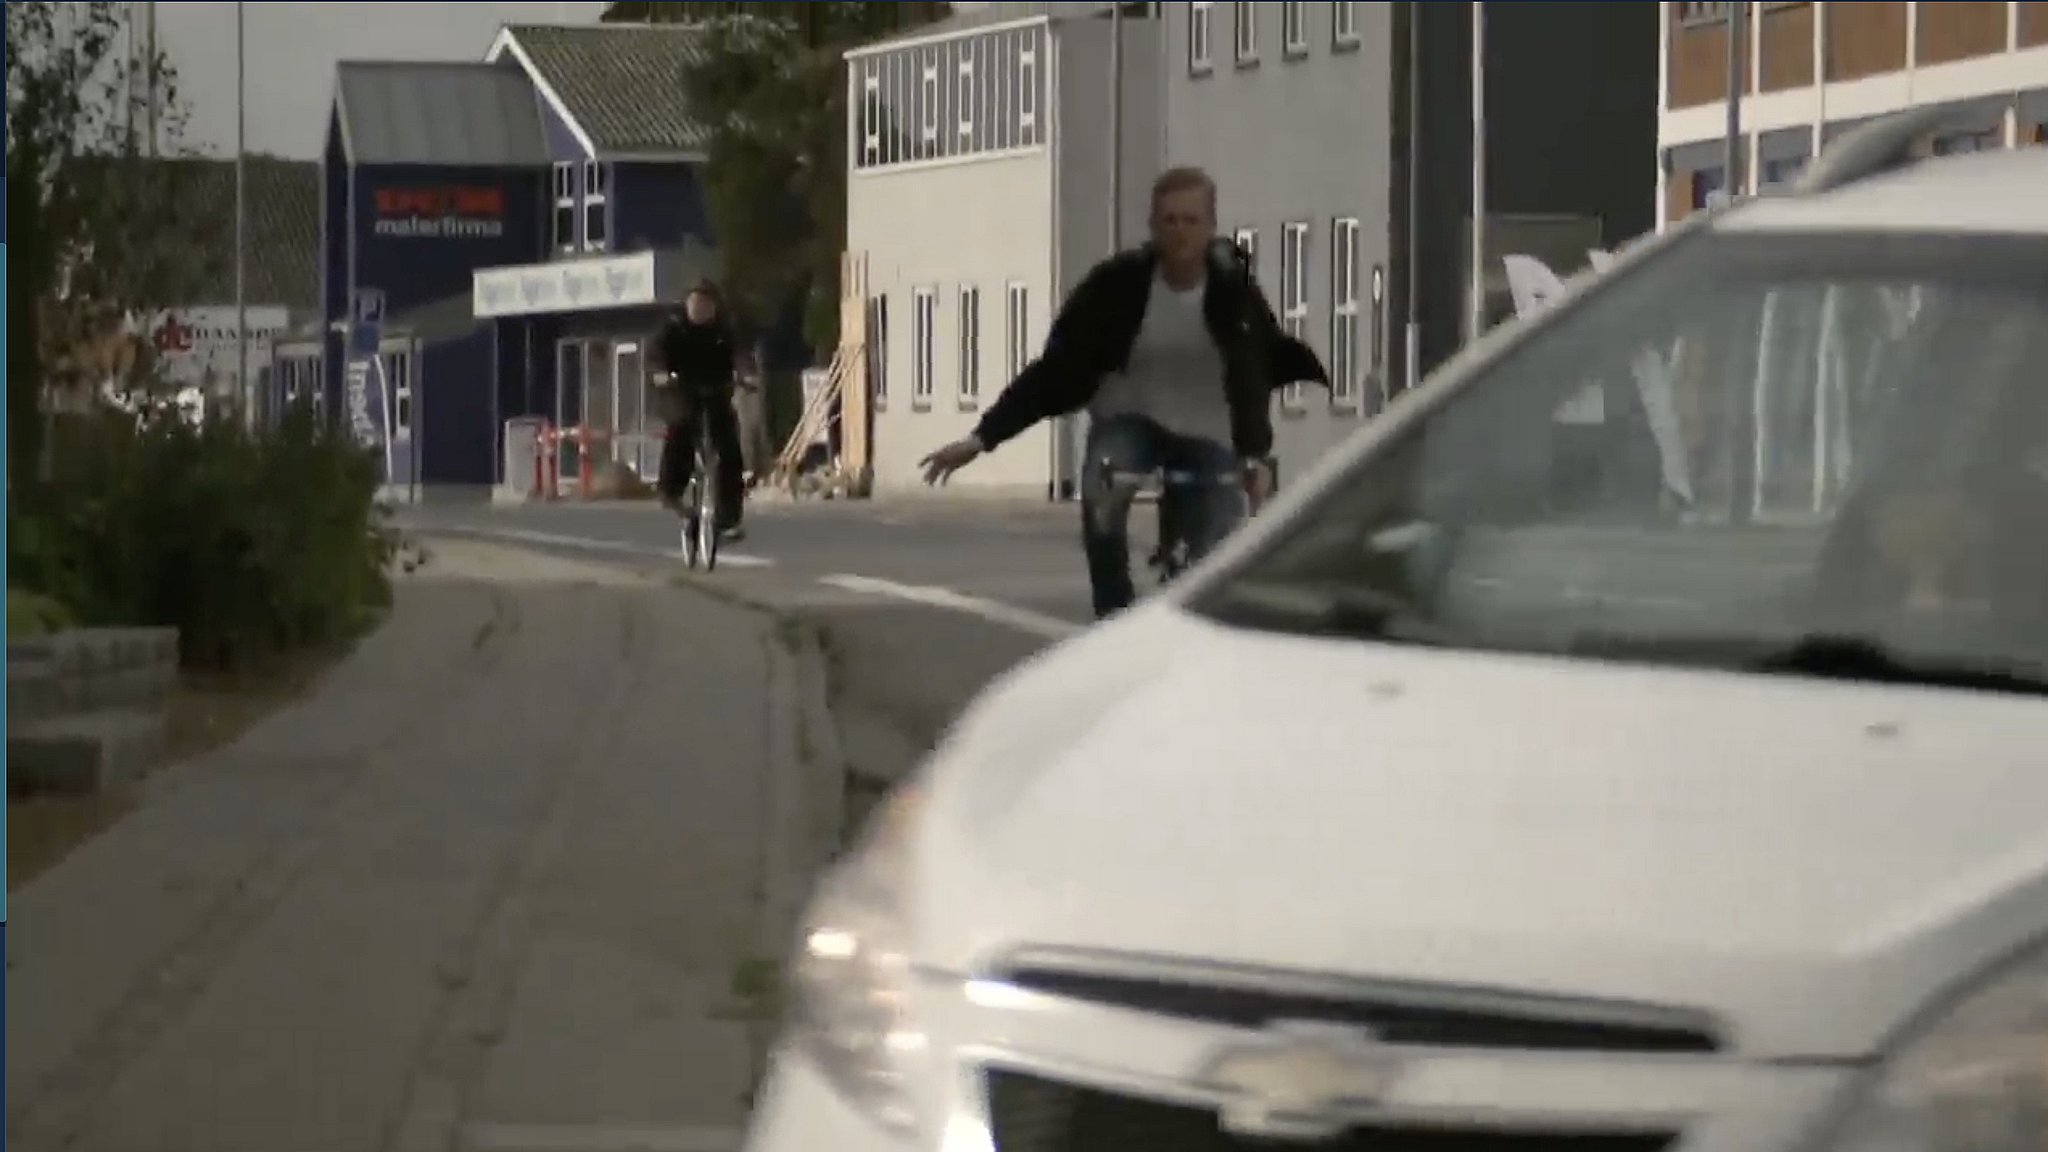 dyb Afbrydelse Allerede Beboere utrygge ved at cykle eller gå på vejene efter dødsulykke | TV2 Fyn